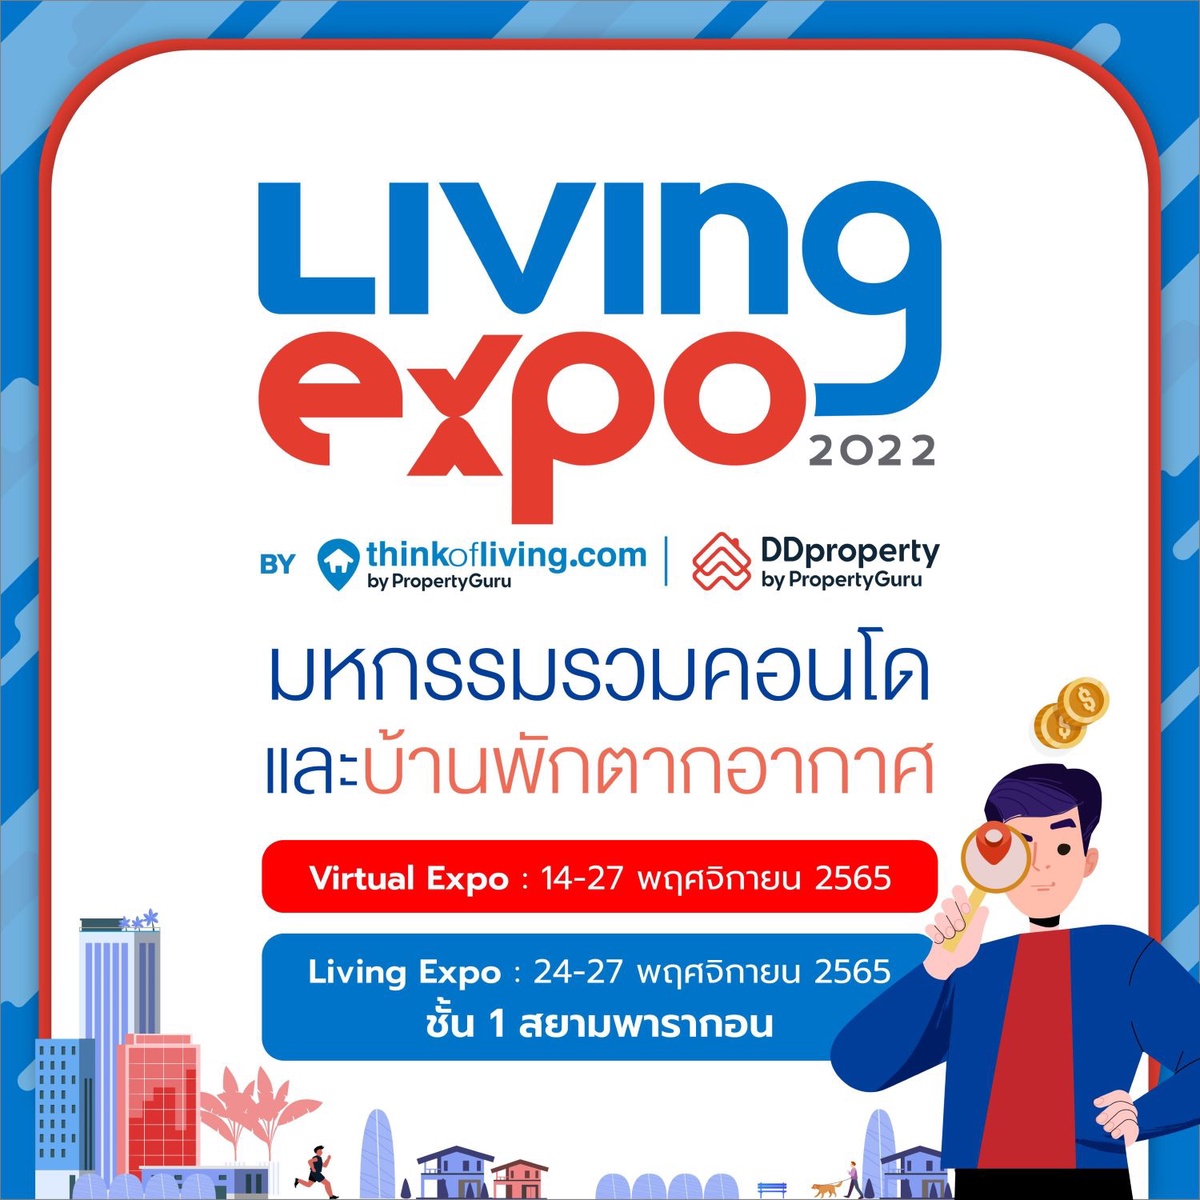 ครั้งแรก! 2 ผู้นำพร็อพเทคไทย Think of Living - ดีดีพร็อพเพอร์ตี้ ผนึกกำลังปลุกตลาดอสังหาฯ คึกคักส่งท้ายปีในงาน Living Expo